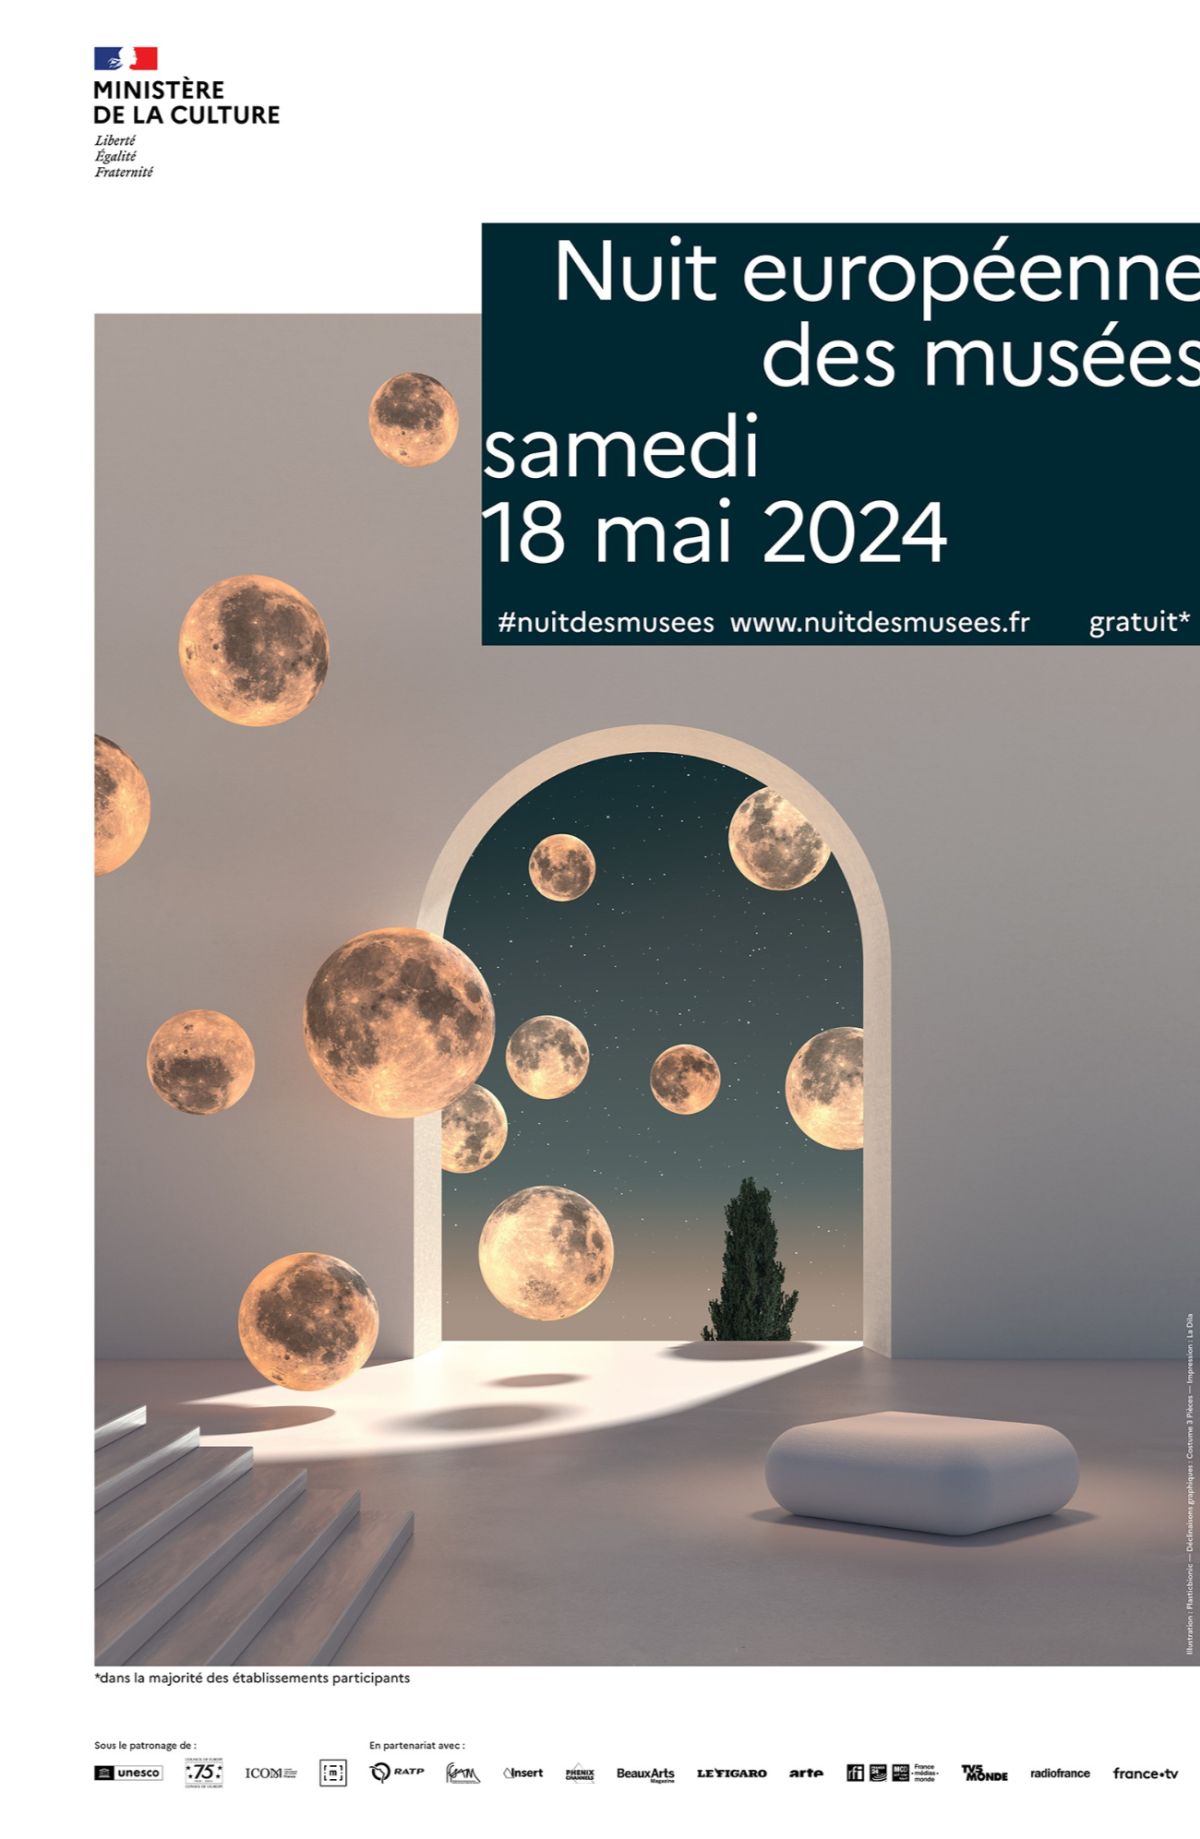 NUIT DES MUSEES 2024